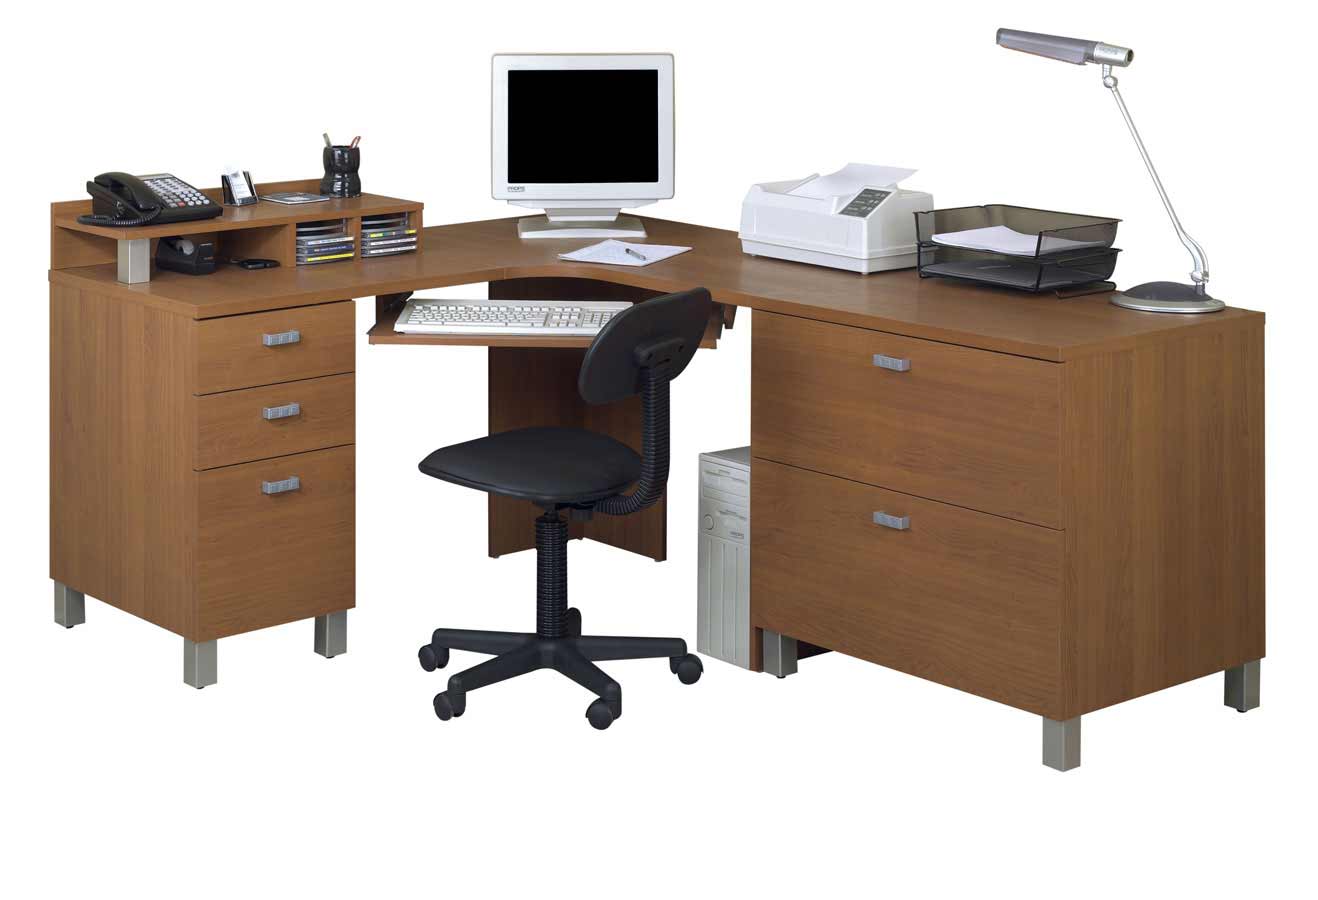 Free Download Ne Era Ambiance Wooden Office Corner Computer Desk